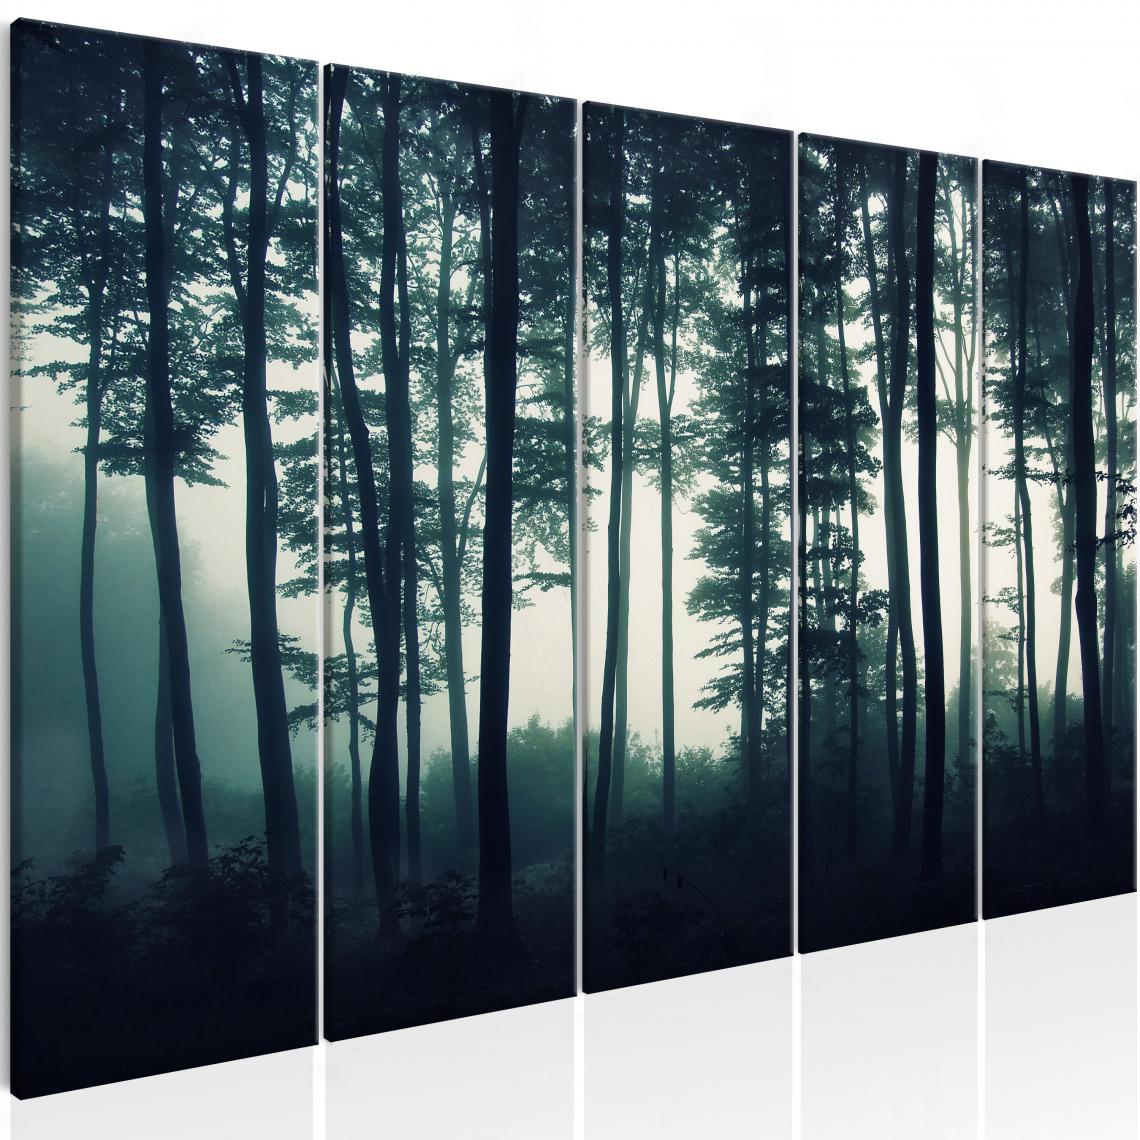 Decoshop26 - Tableau sur toile en 5 panneaux décoration murale image imprimée cadre en bois à suspendre Forêt sombre (5 parties) étroite 200x80 cm 11_0006449 - Tableaux, peintures